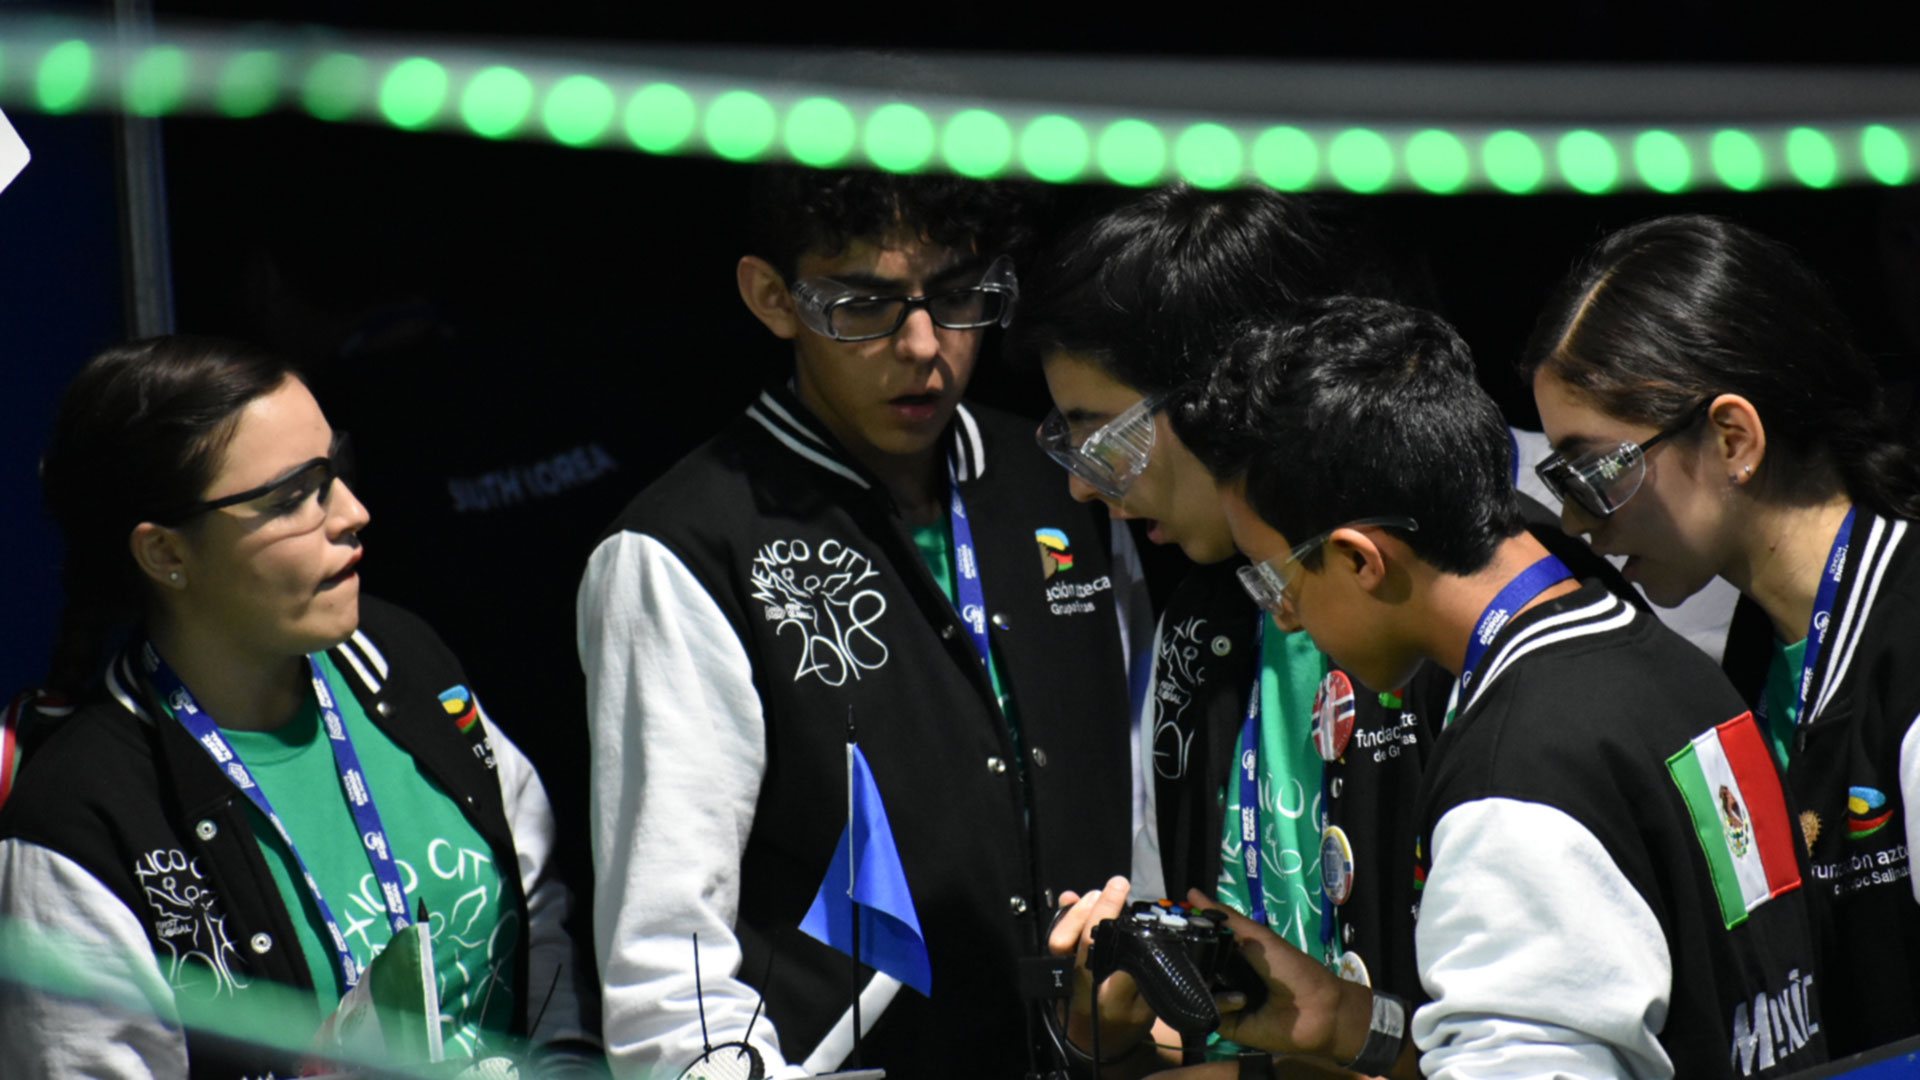 Jovenes del equipo mexicano de robótica, agrupados durante la competencia